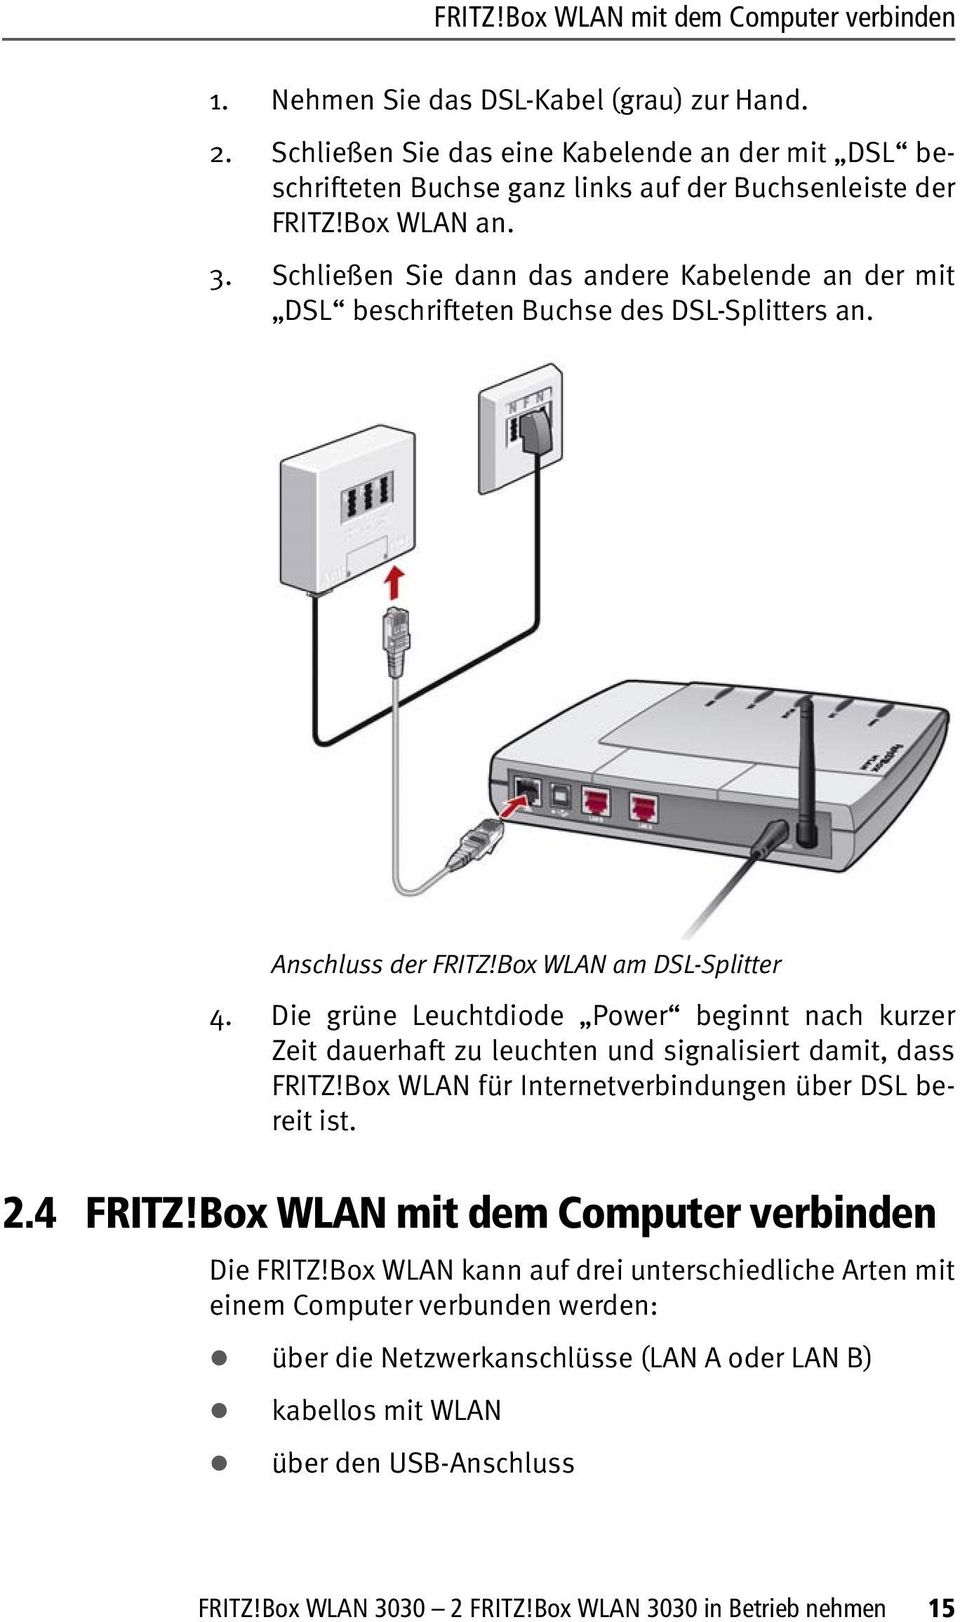 Schließen Sie dann das andere Kabelende an der mit DSL beschrifteten Buchse des DSL-Splitters an. Anschluss der FRITZ!Box WLAN am DSL-Splitter 4.